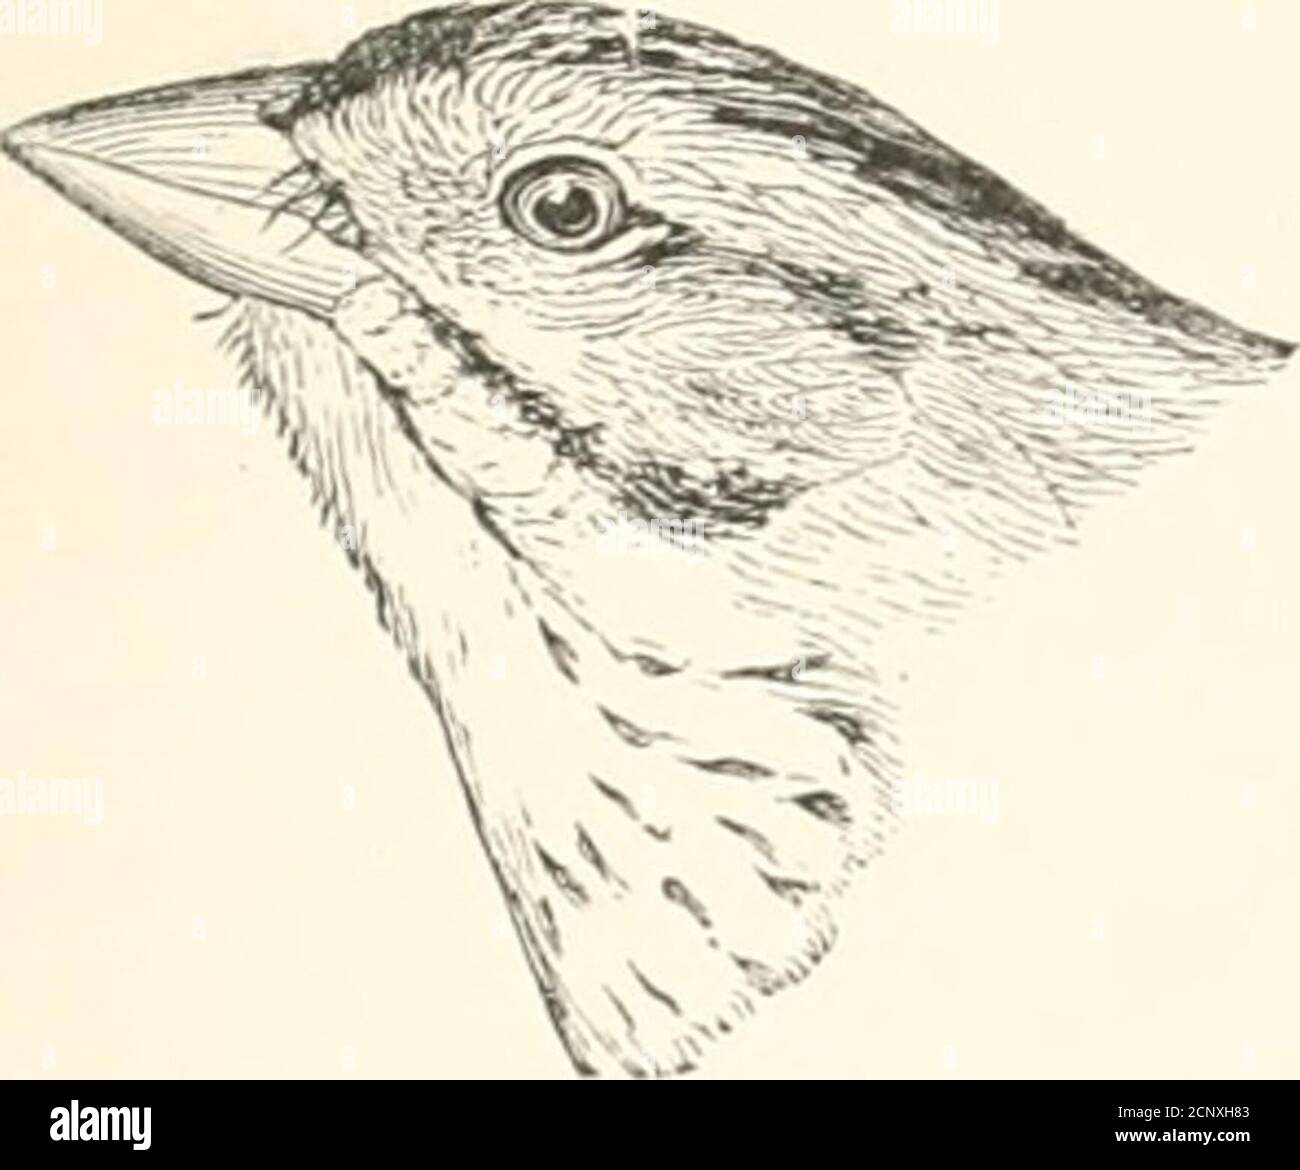 . Les oiseaux de l'est de l'Amérique du Nord se trouvent à l'est du XIXe méridien .. . Ammodranius caudaculus. (Coturniculus) henslowi. FAMILLE FHINC;iLLII&gt;^. SPAKKOWS, FINCHES, CROSSBILLS, ETC. 229. Dessus de lichjid et de nape, vert olive pâle, mixé avec du noir; pas de bande tawny sur l'œil. Eclaireur de Henslows. Ammodramns handoivii.Voir N° 412. Banque D'Images